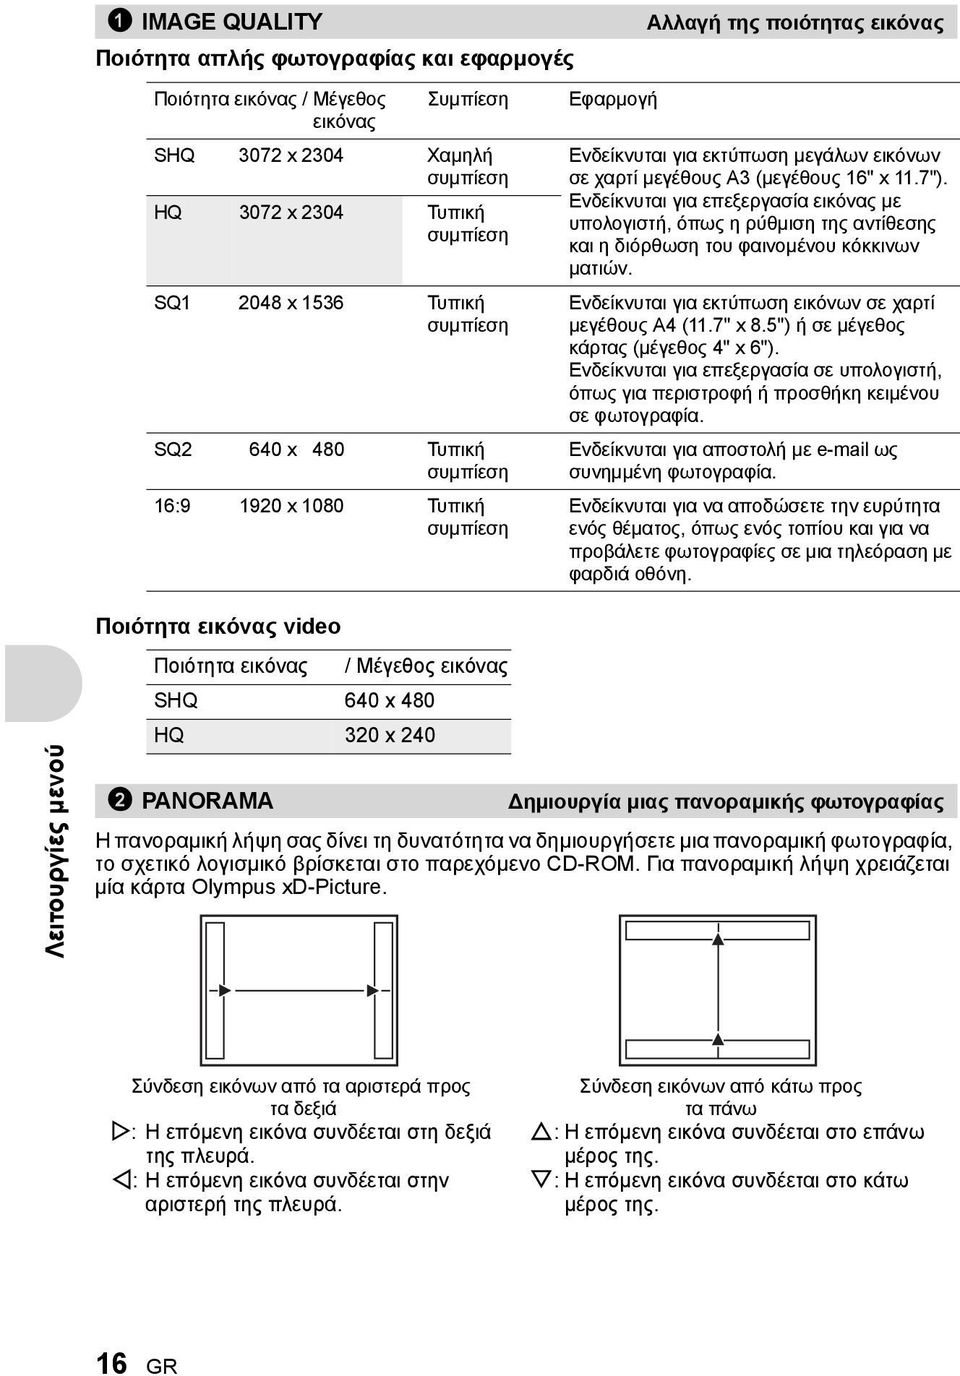 Ενδείκνυται για επεξεργασία εικόνας με υπολογιστή, όπως η ρύθμιση της αντίθεσης και η διόρθωση του φαινομένου κόκκινων ματιών. Ενδείκνυται για εκτύπωση εικόνων σε χαρτί μεγέθους A4 (11.7" x 8.